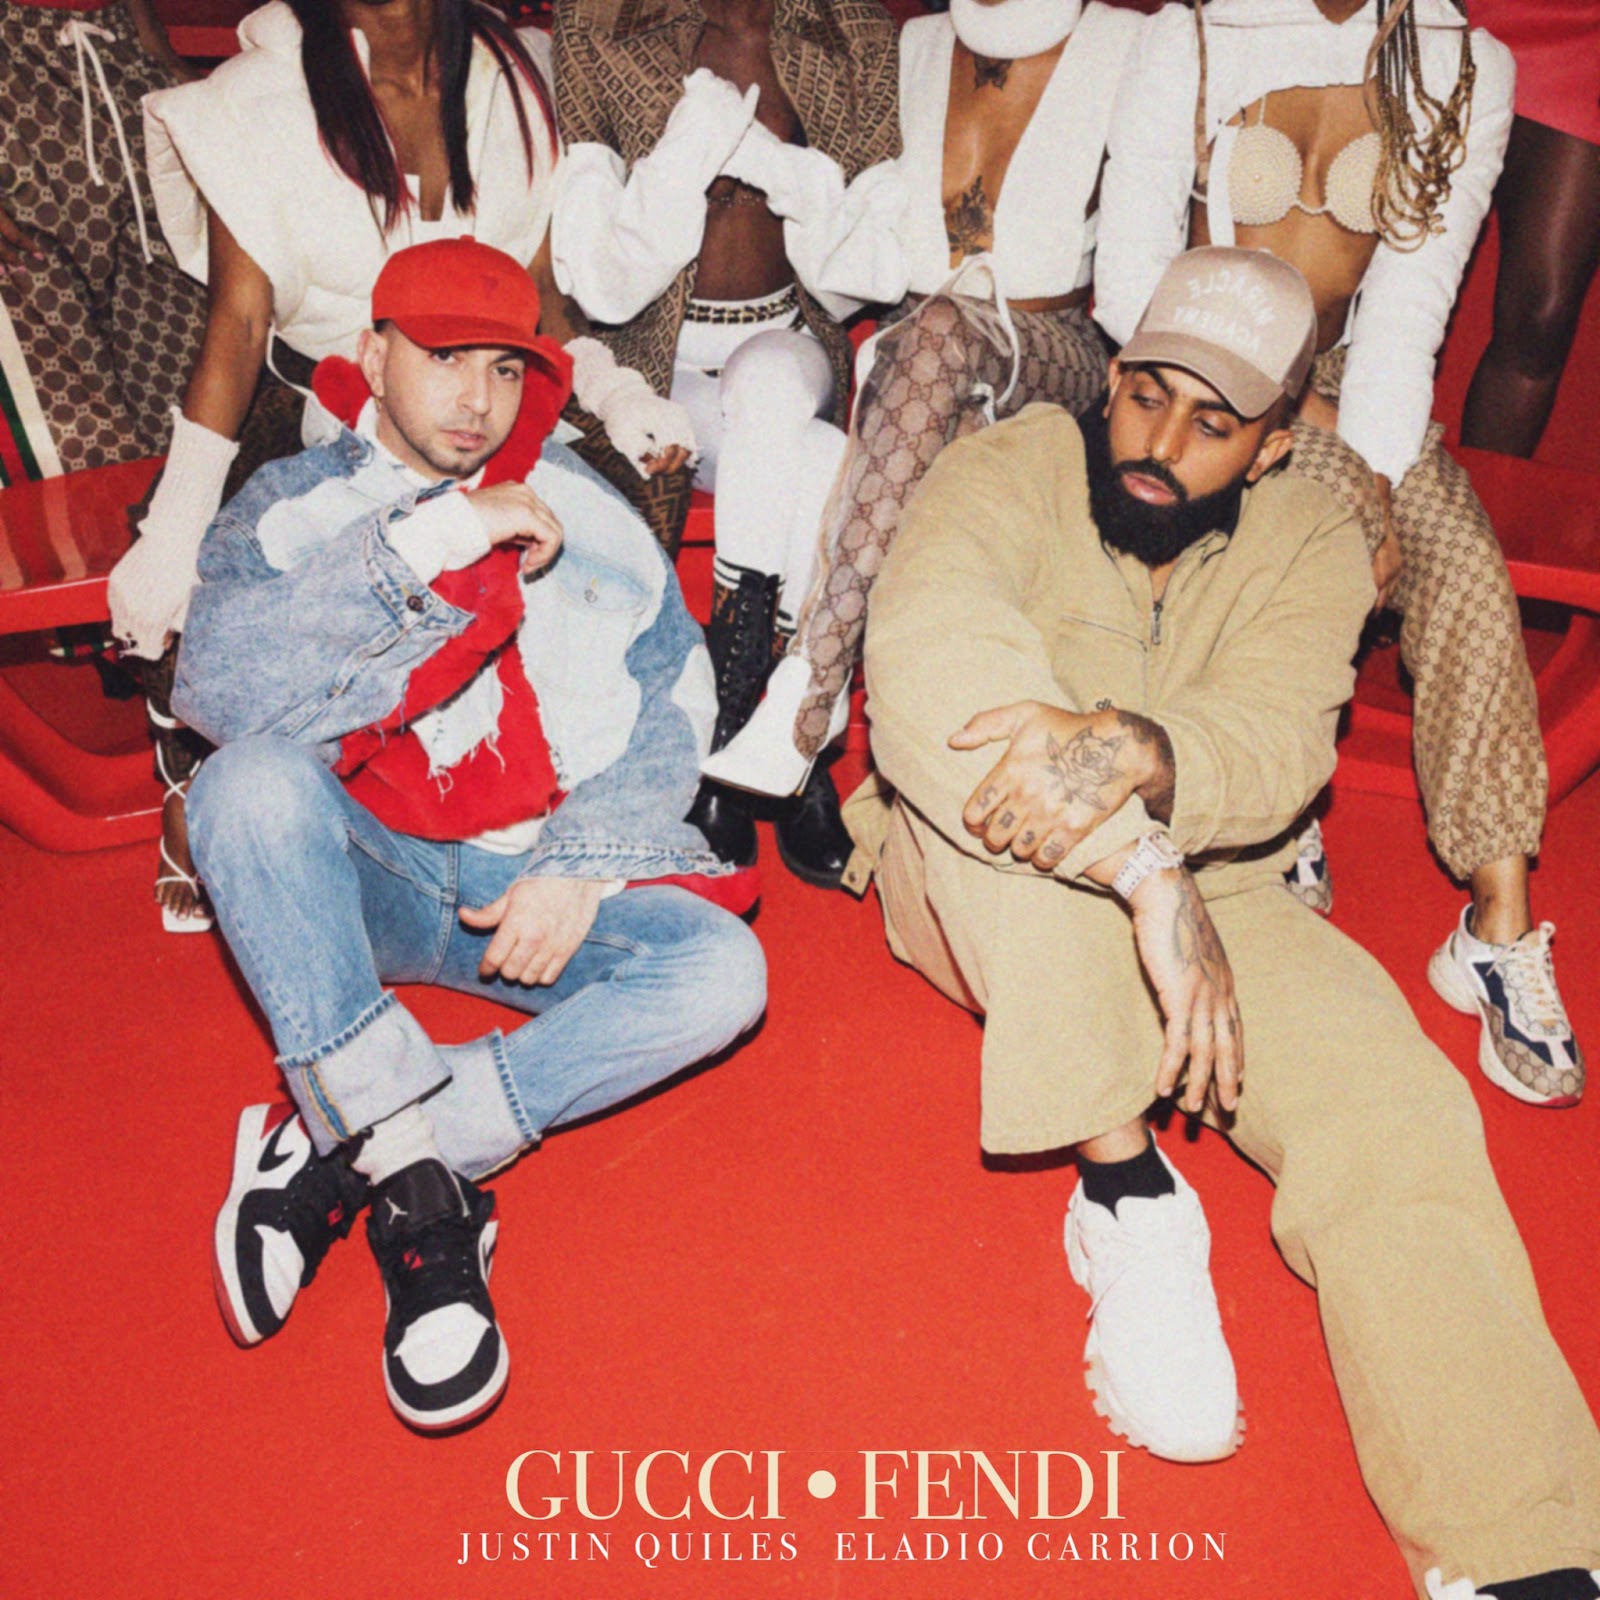 JUSTIN QUILES junto a Eladio Carrión lanzan “Gucci Fendi”